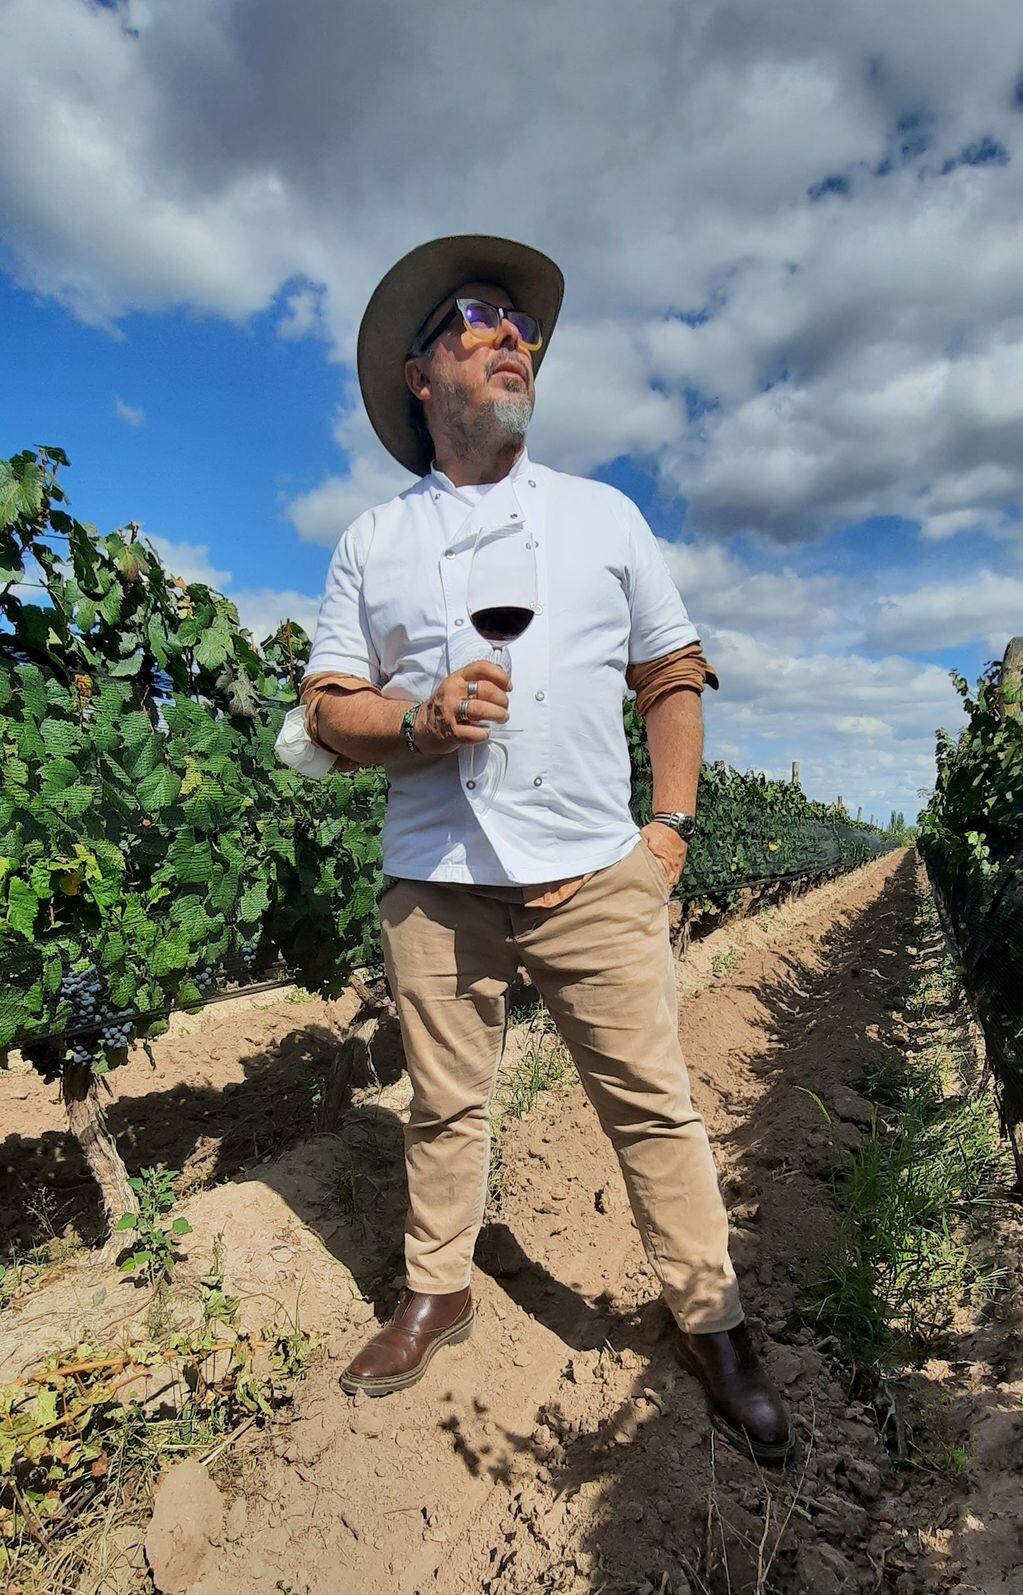 Para Donato De Santis, hay una relación inseparable entre la comida y el vino